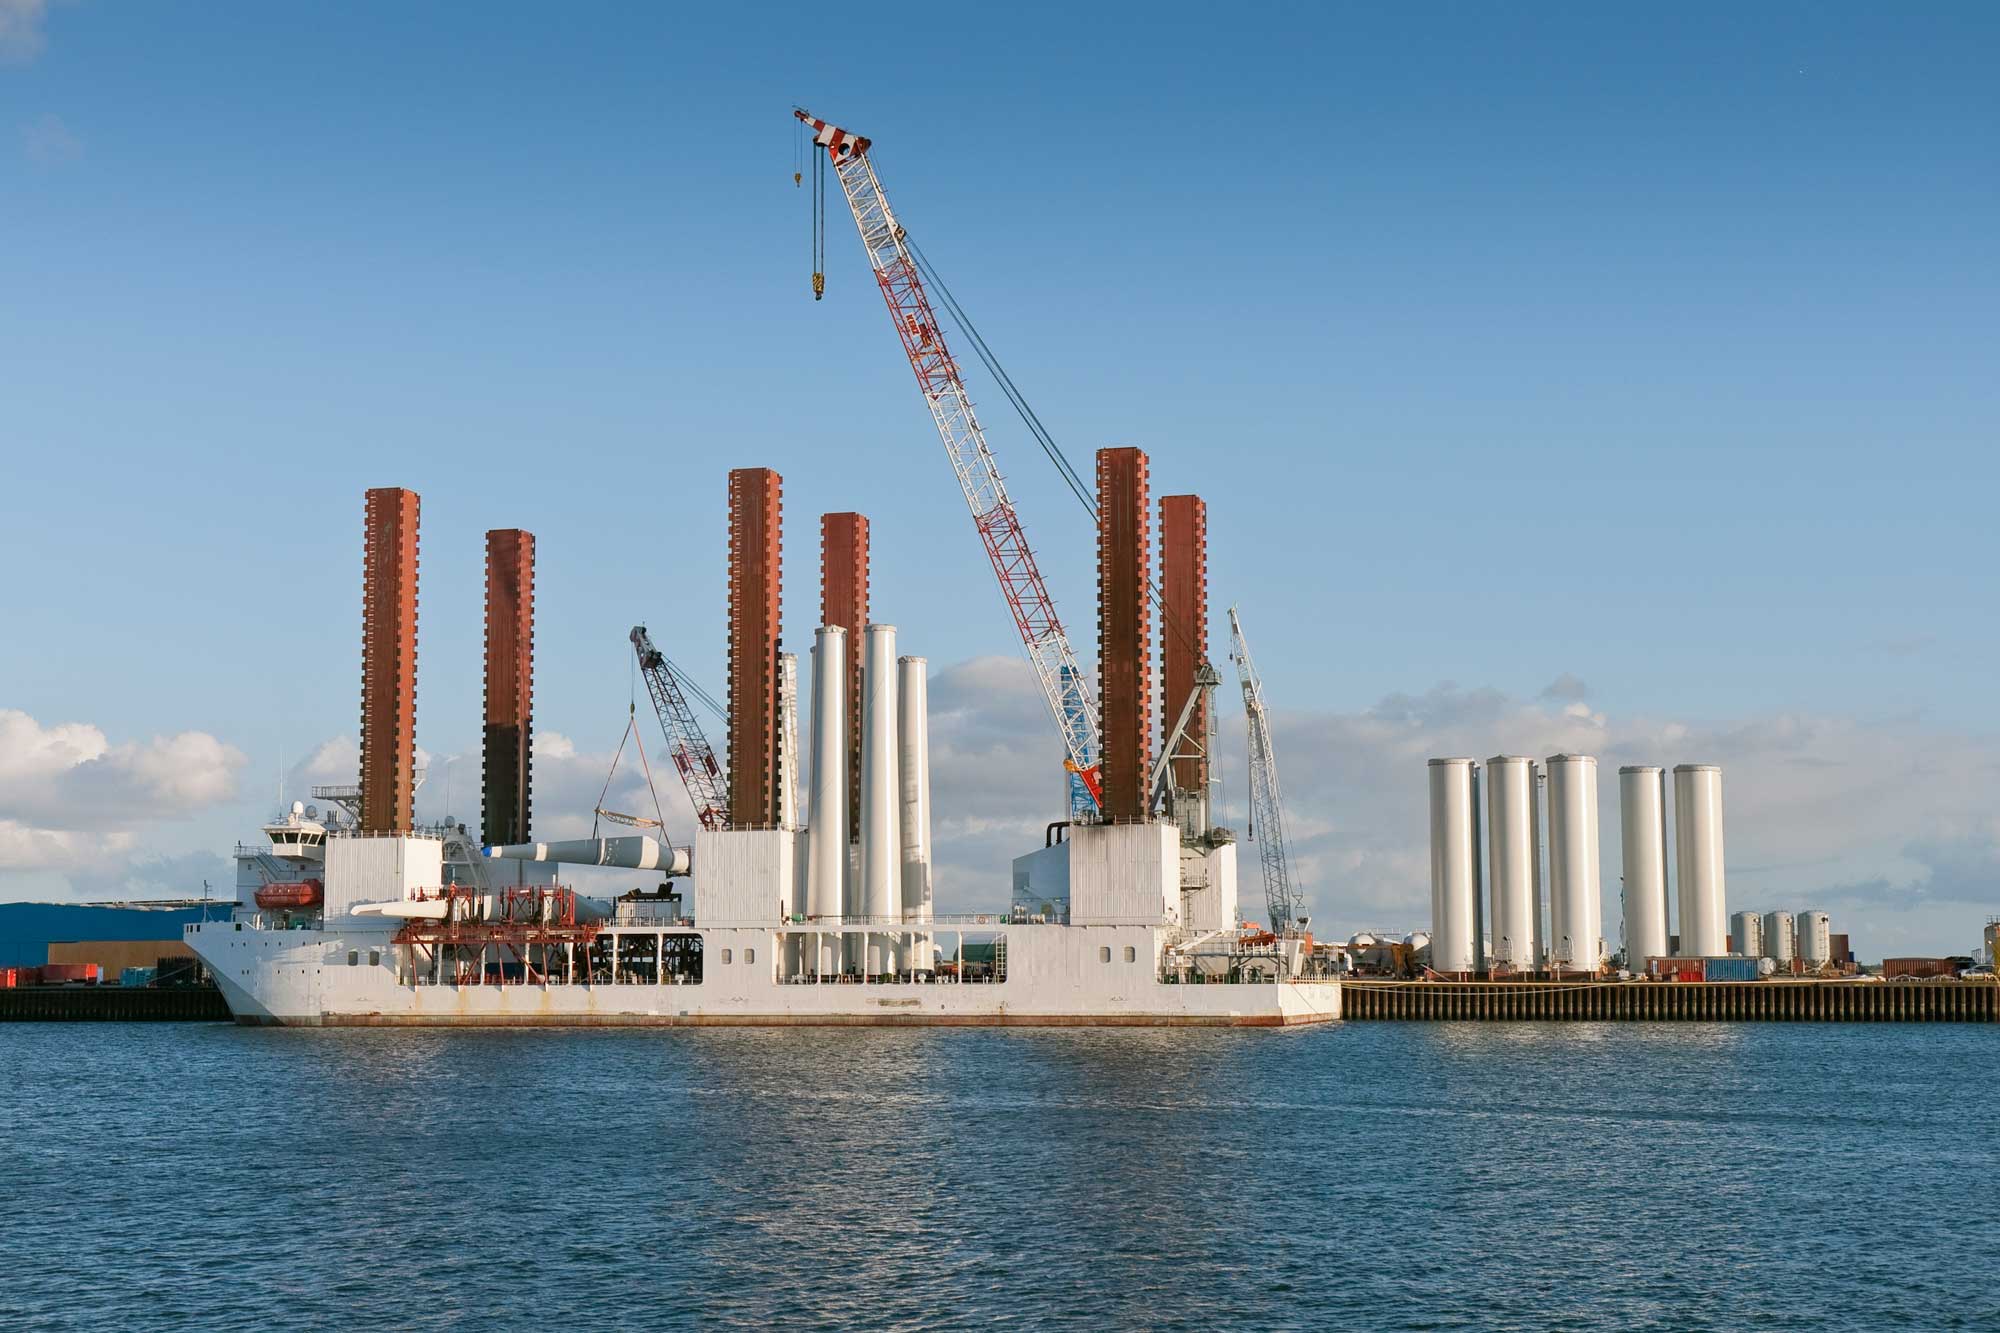 Offshore Wind Farm Vessel